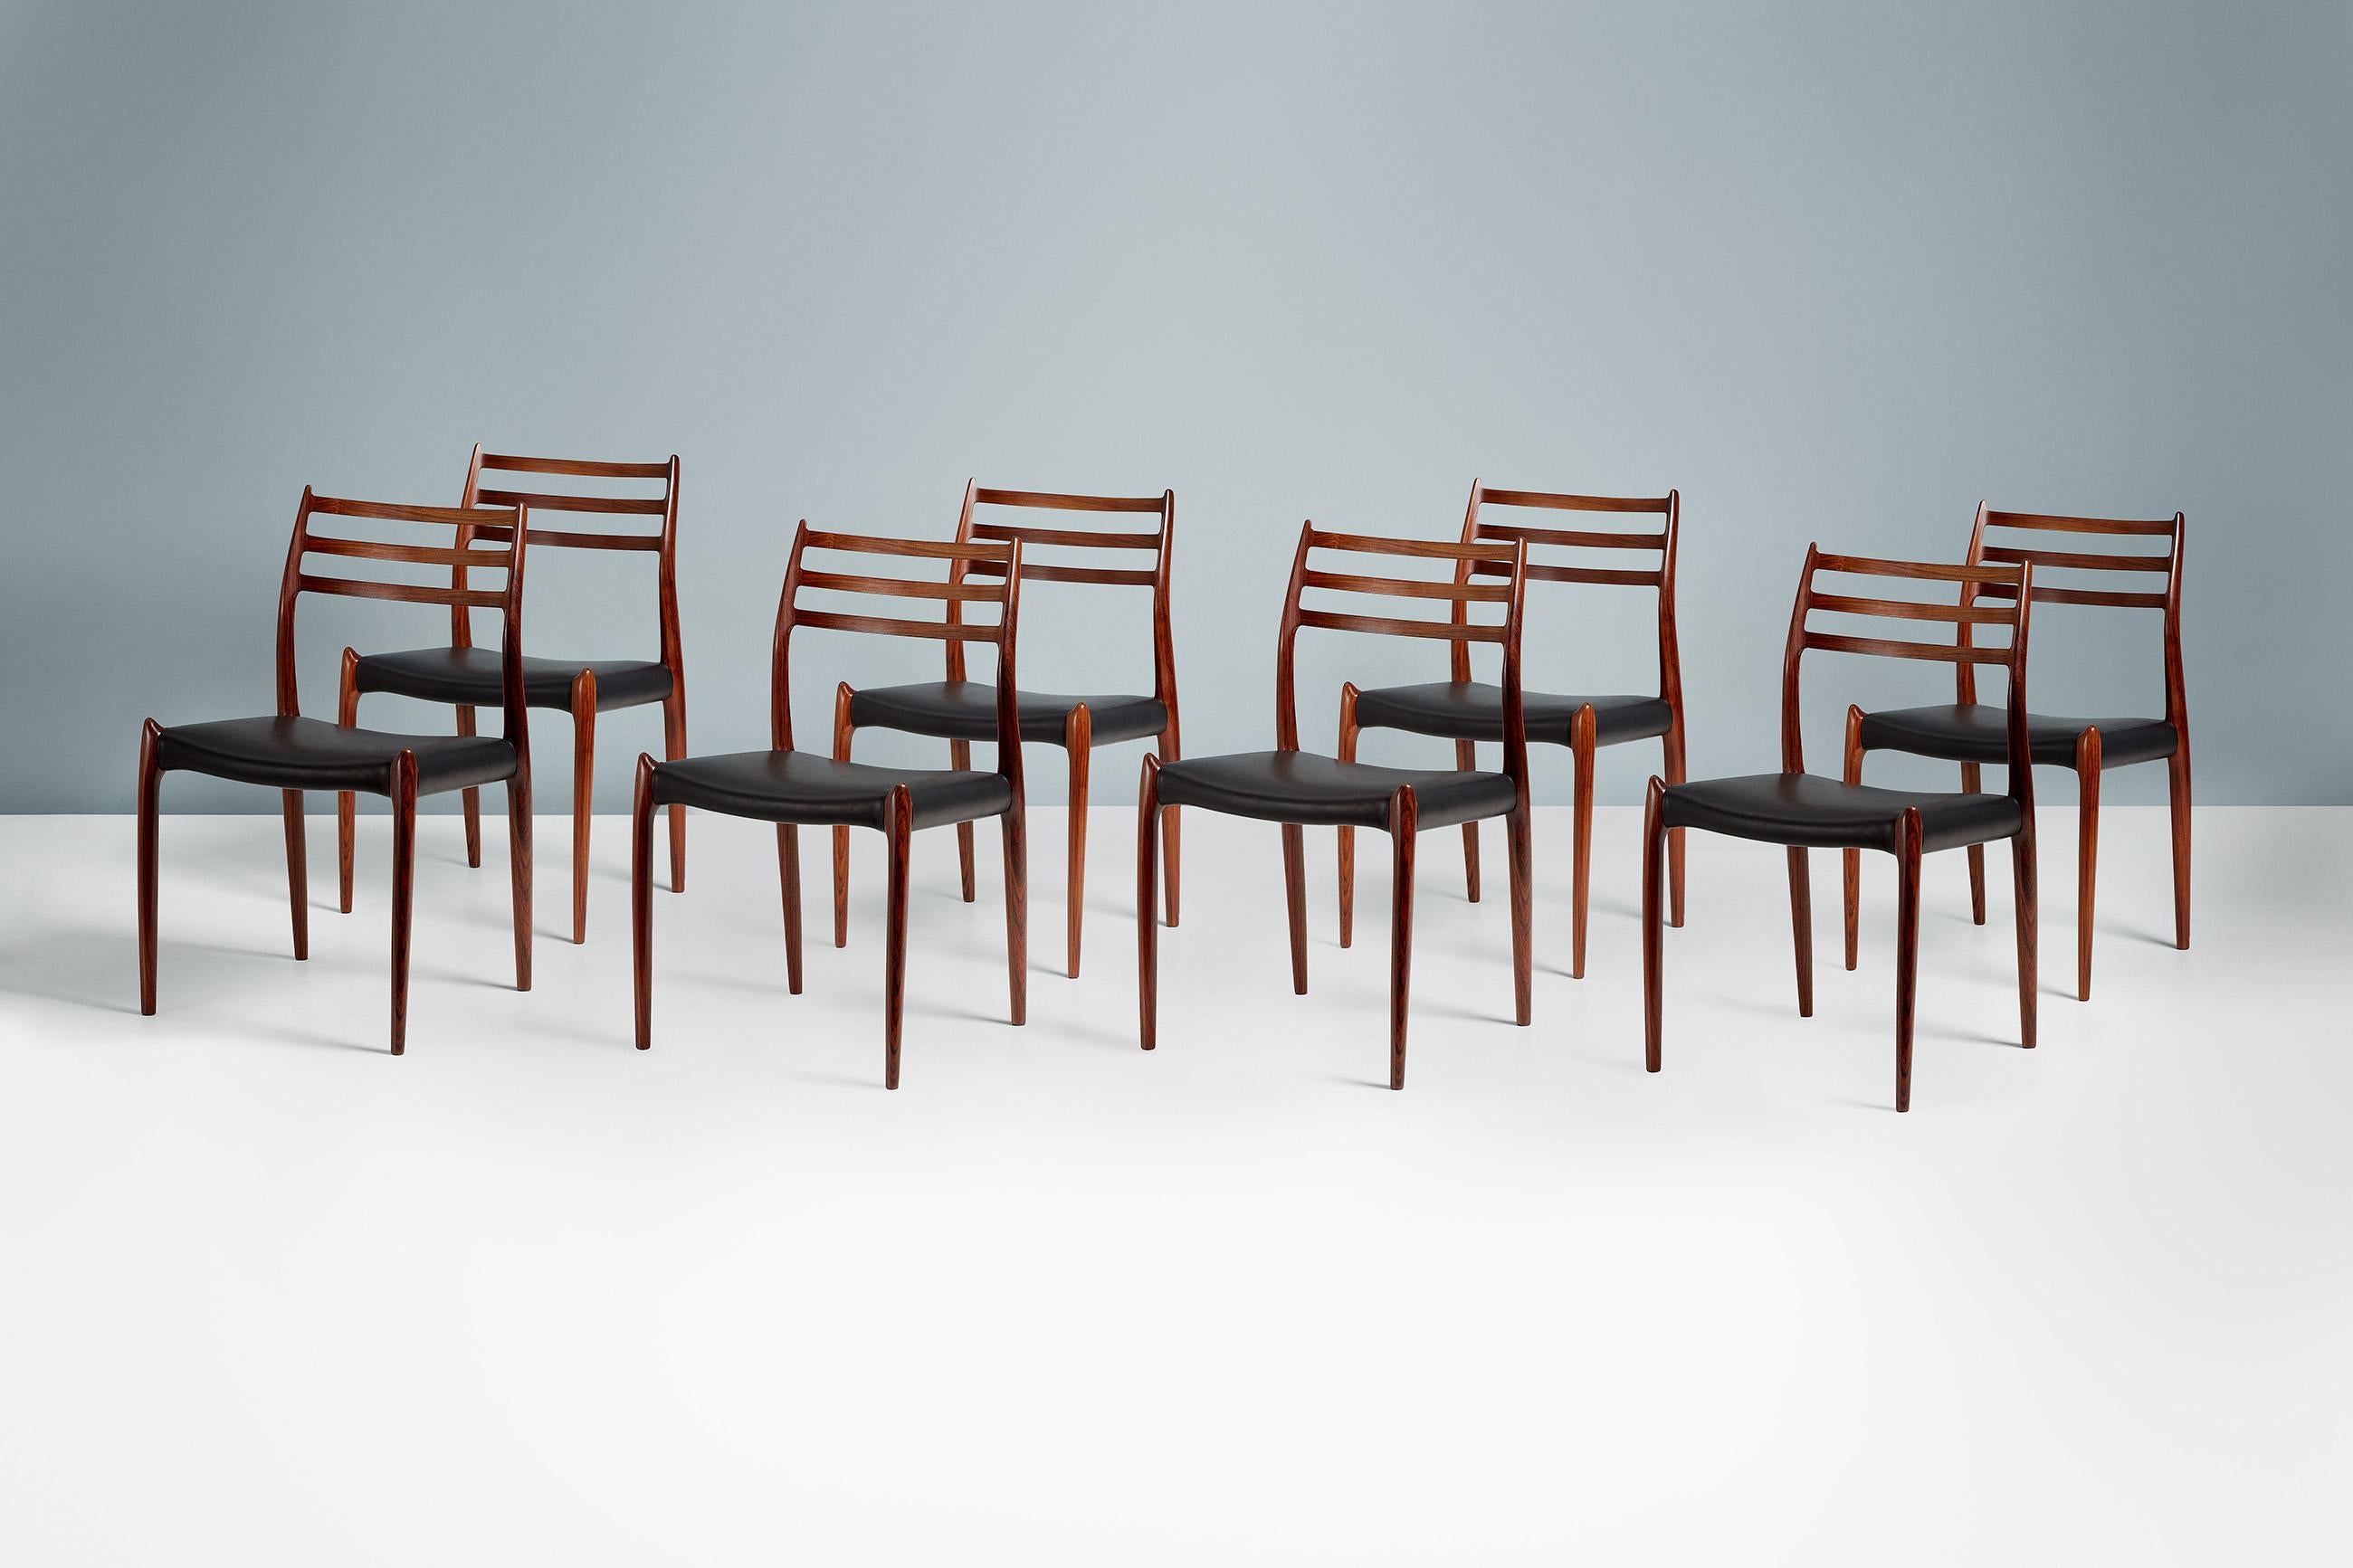 Niels O. Møller - Modell 78 Esszimmerstühle, 1962

Satz von 8 ikonischen Esszimmerstühlen Modell 78, entworfen von Niels O. Møller für J.L. Moller Mobelfabrik, Dänemark, 1962. Die Rahmen sind aus stark gemasertem, exquisitem brasilianischem